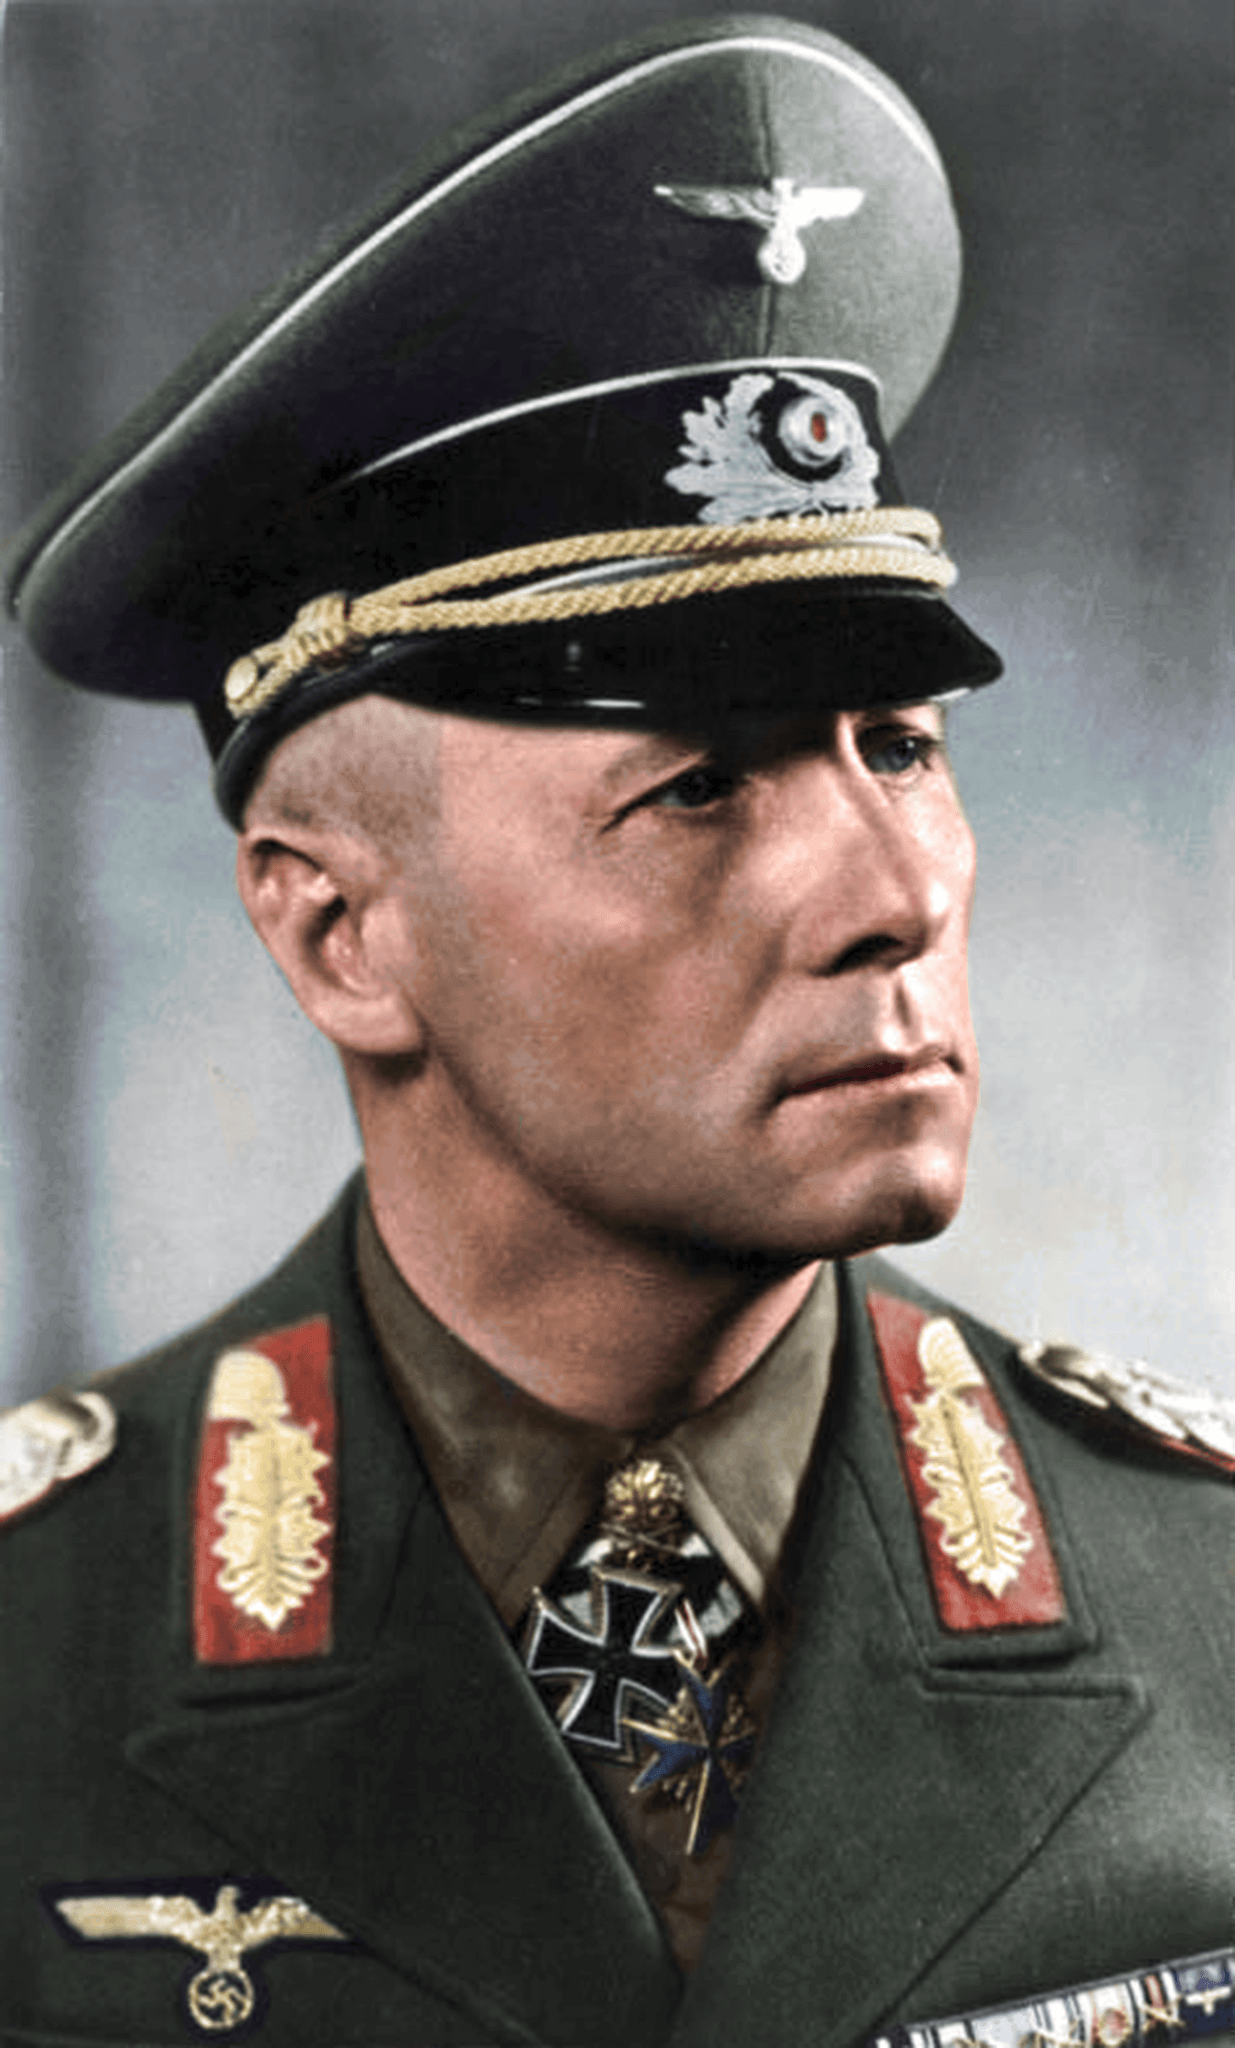 auteur Erwin Rommel de la citation La bataille est menée et décidée par les quarts-maîtres, bien avant le début du tournage.